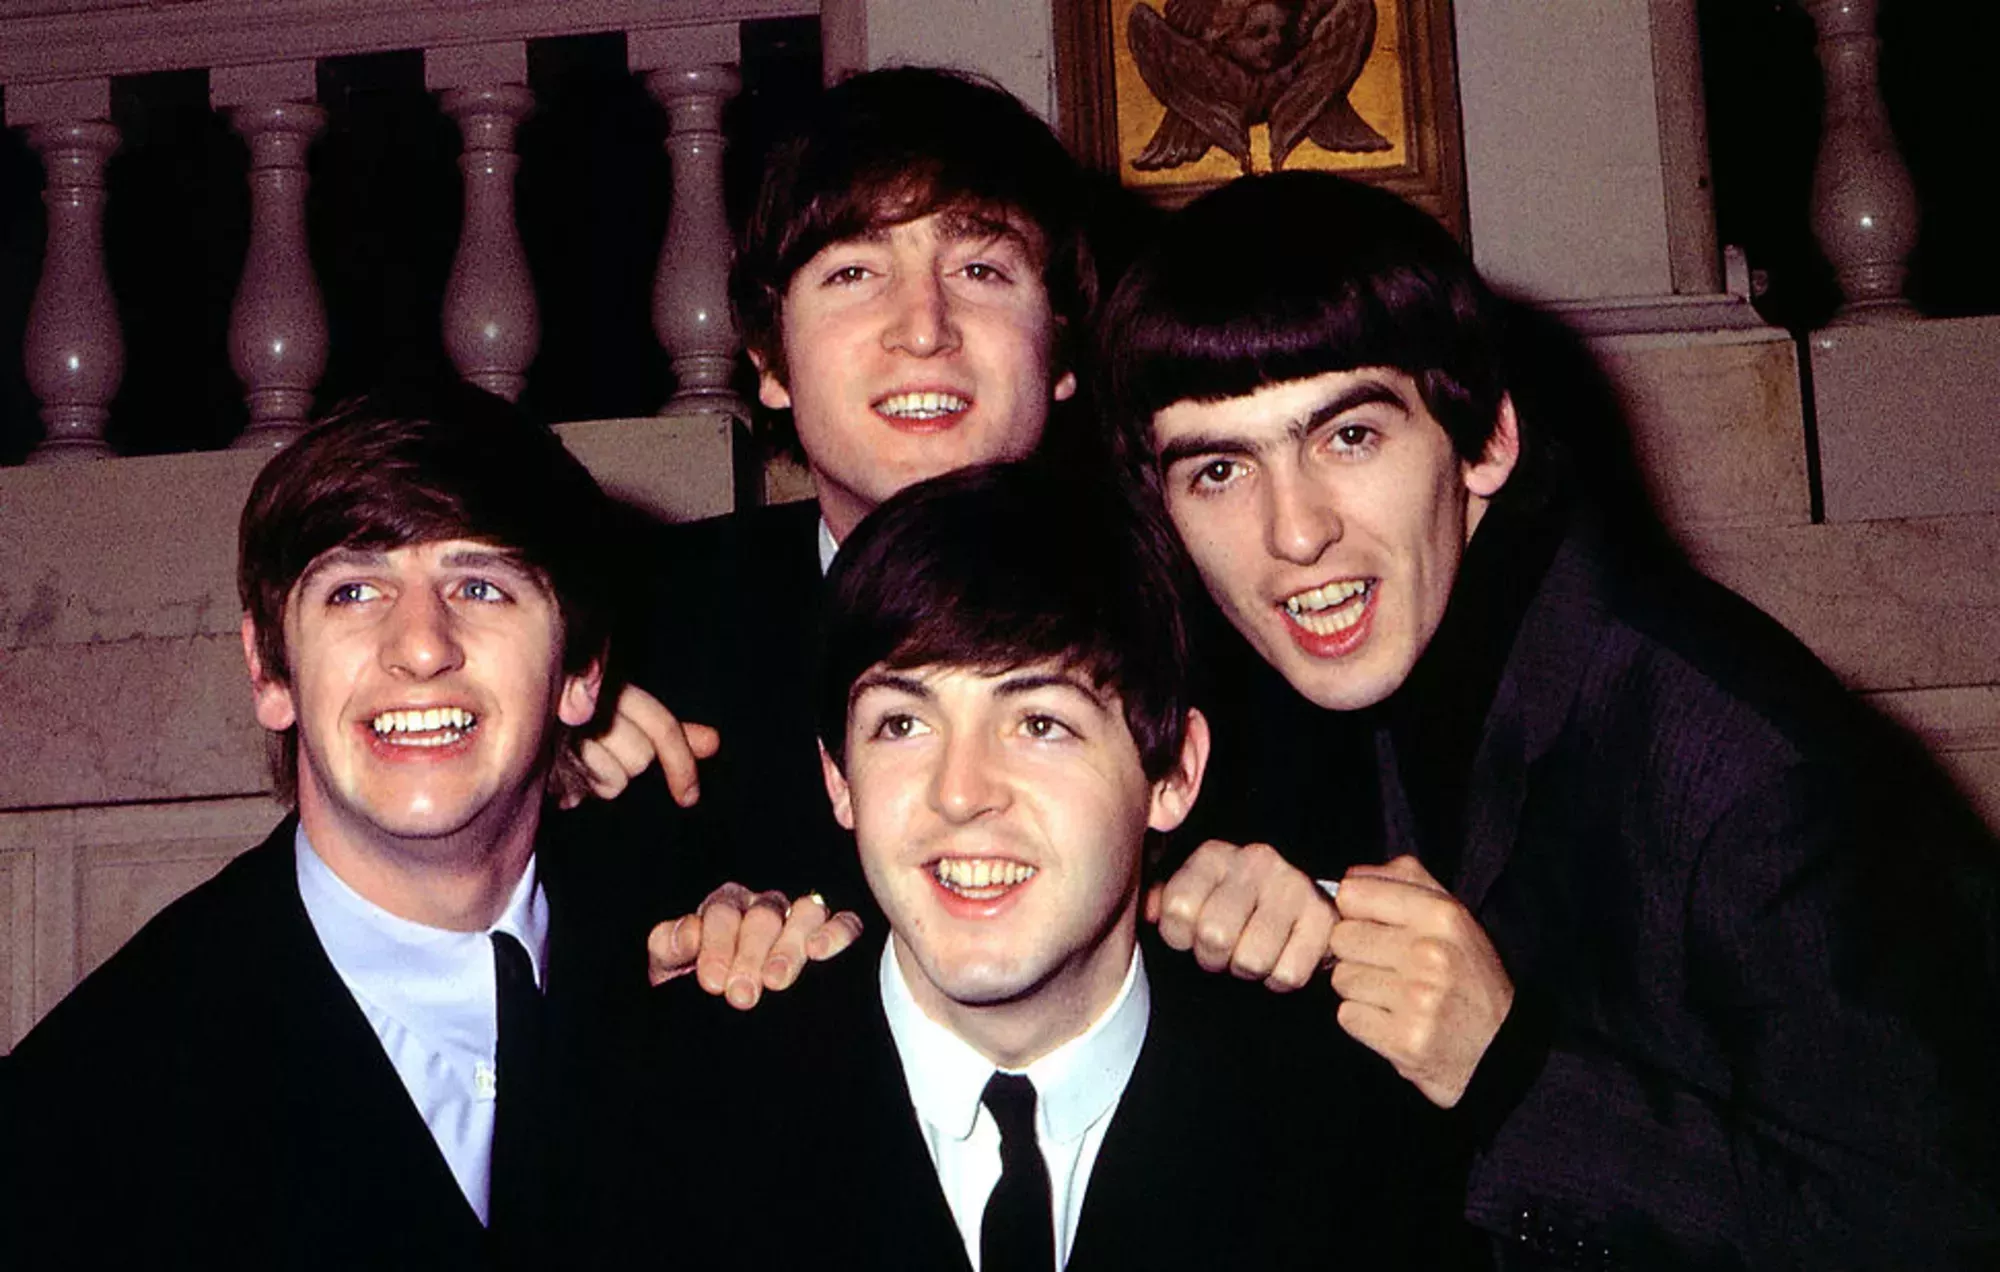 Primer vistazo: El biopic de Brian Epstein 'Midas Man' desvela el reparto de los Beatles